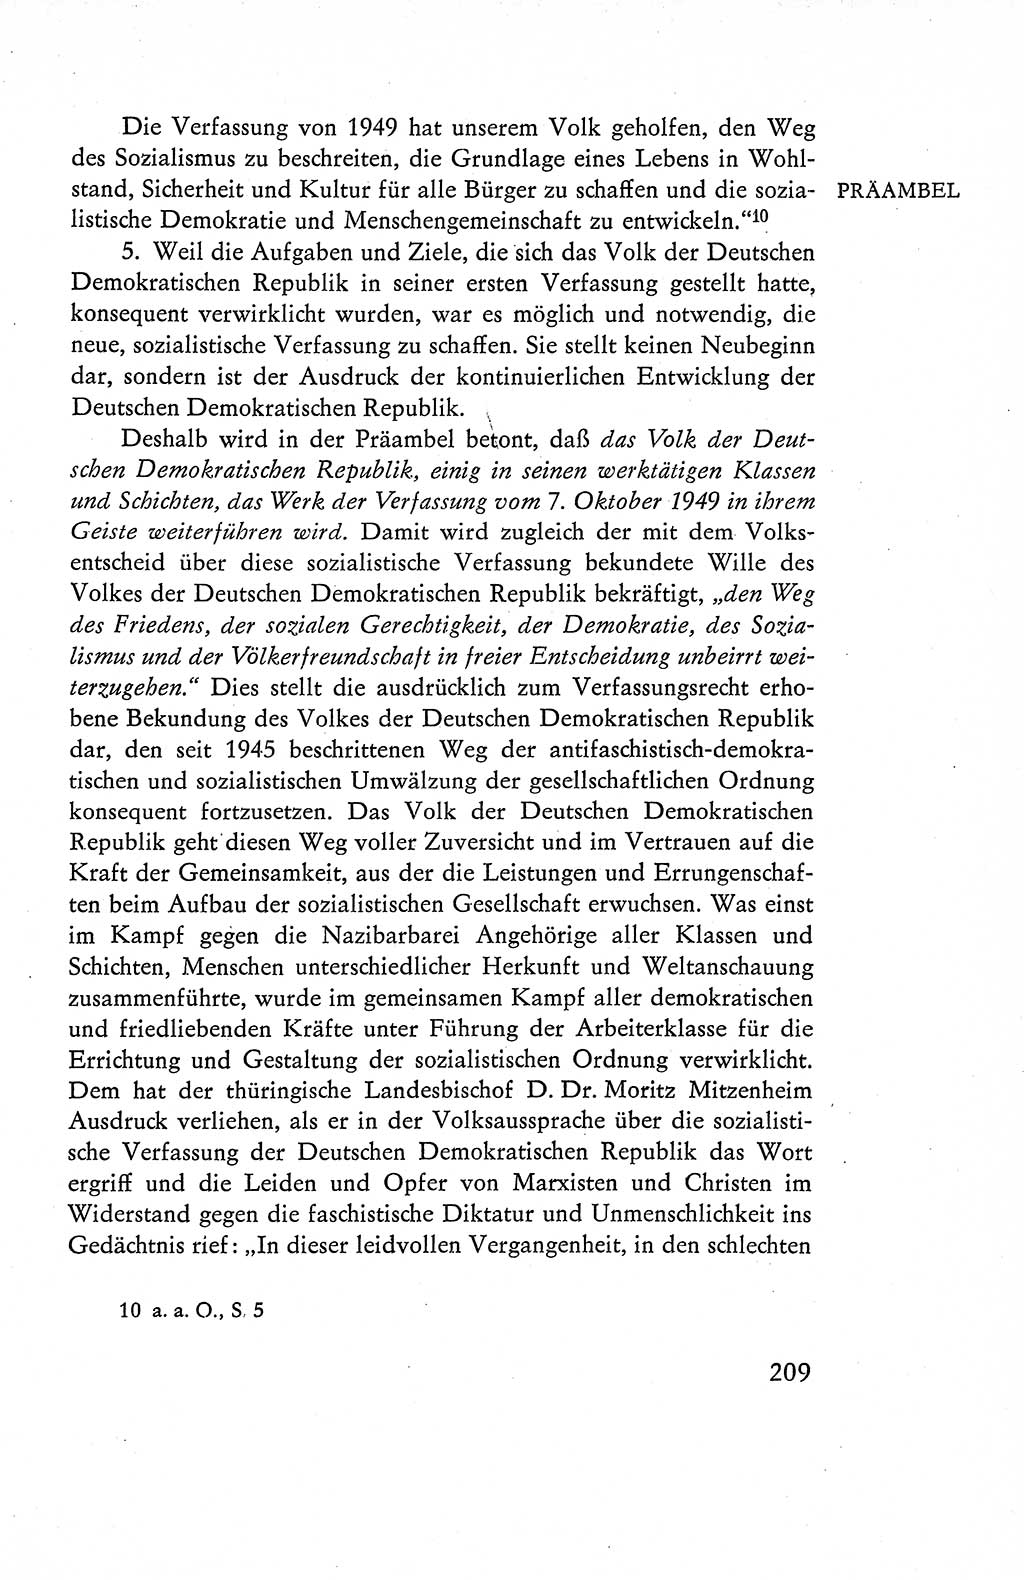 Verfassung der Deutschen Demokratischen Republik (DDR), Dokumente, Kommentar 1969, Band 1, Seite 209 (Verf. DDR Dok. Komm. 1969, Bd. 1, S. 209)